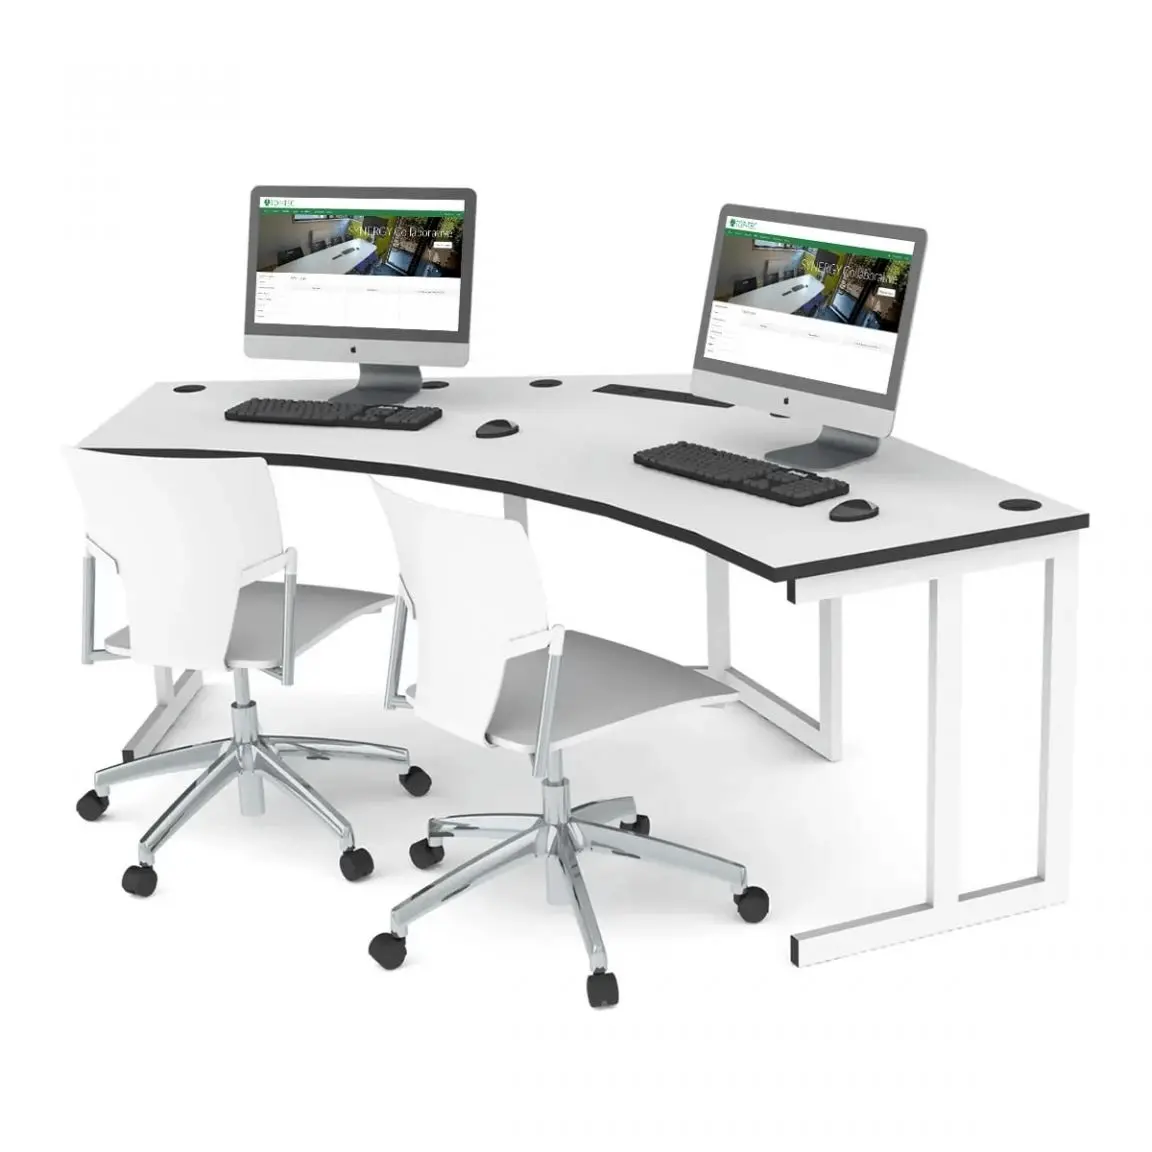 Các mẫu bàn làm việc nhóm 2 người được sử dụng nhiều ở văn phòng